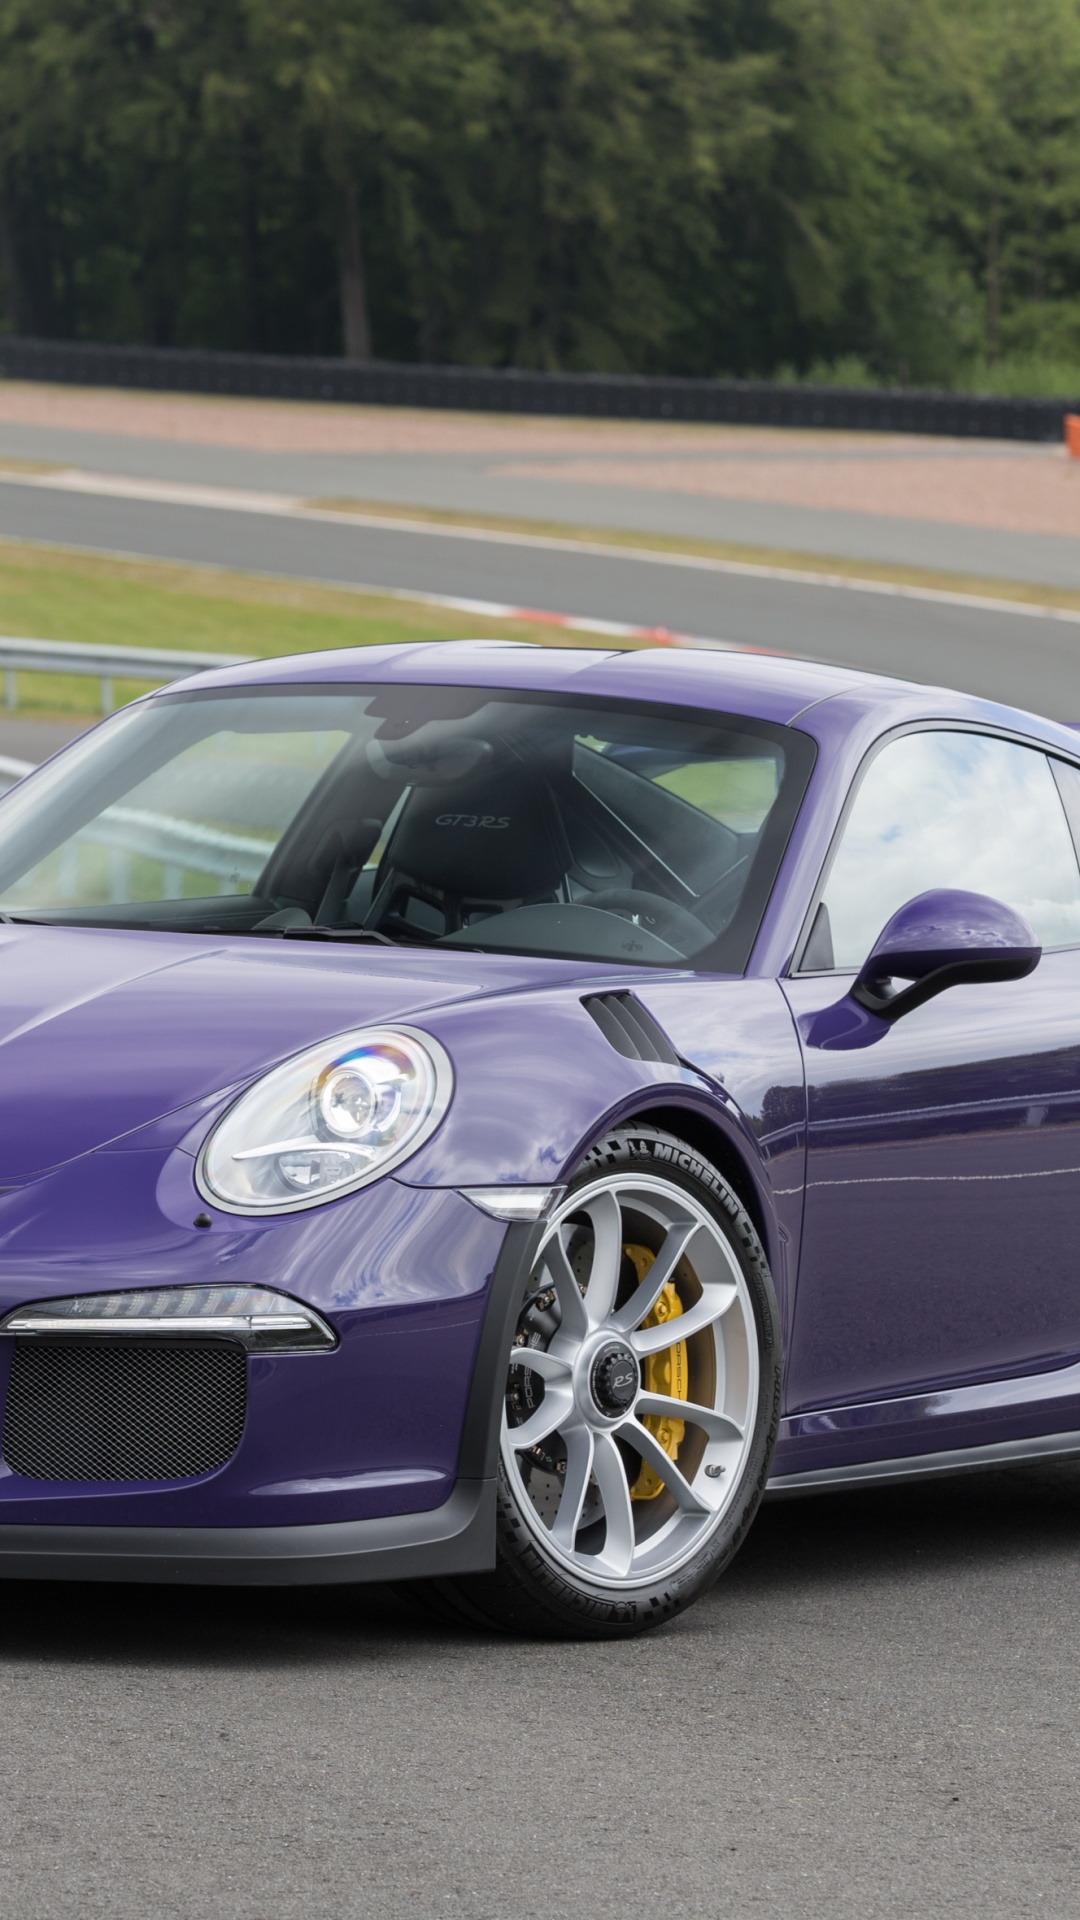 Porsche 911 Violette Sur Piste Pendant la Journée. Wallpaper in 1080x1920 Resolution